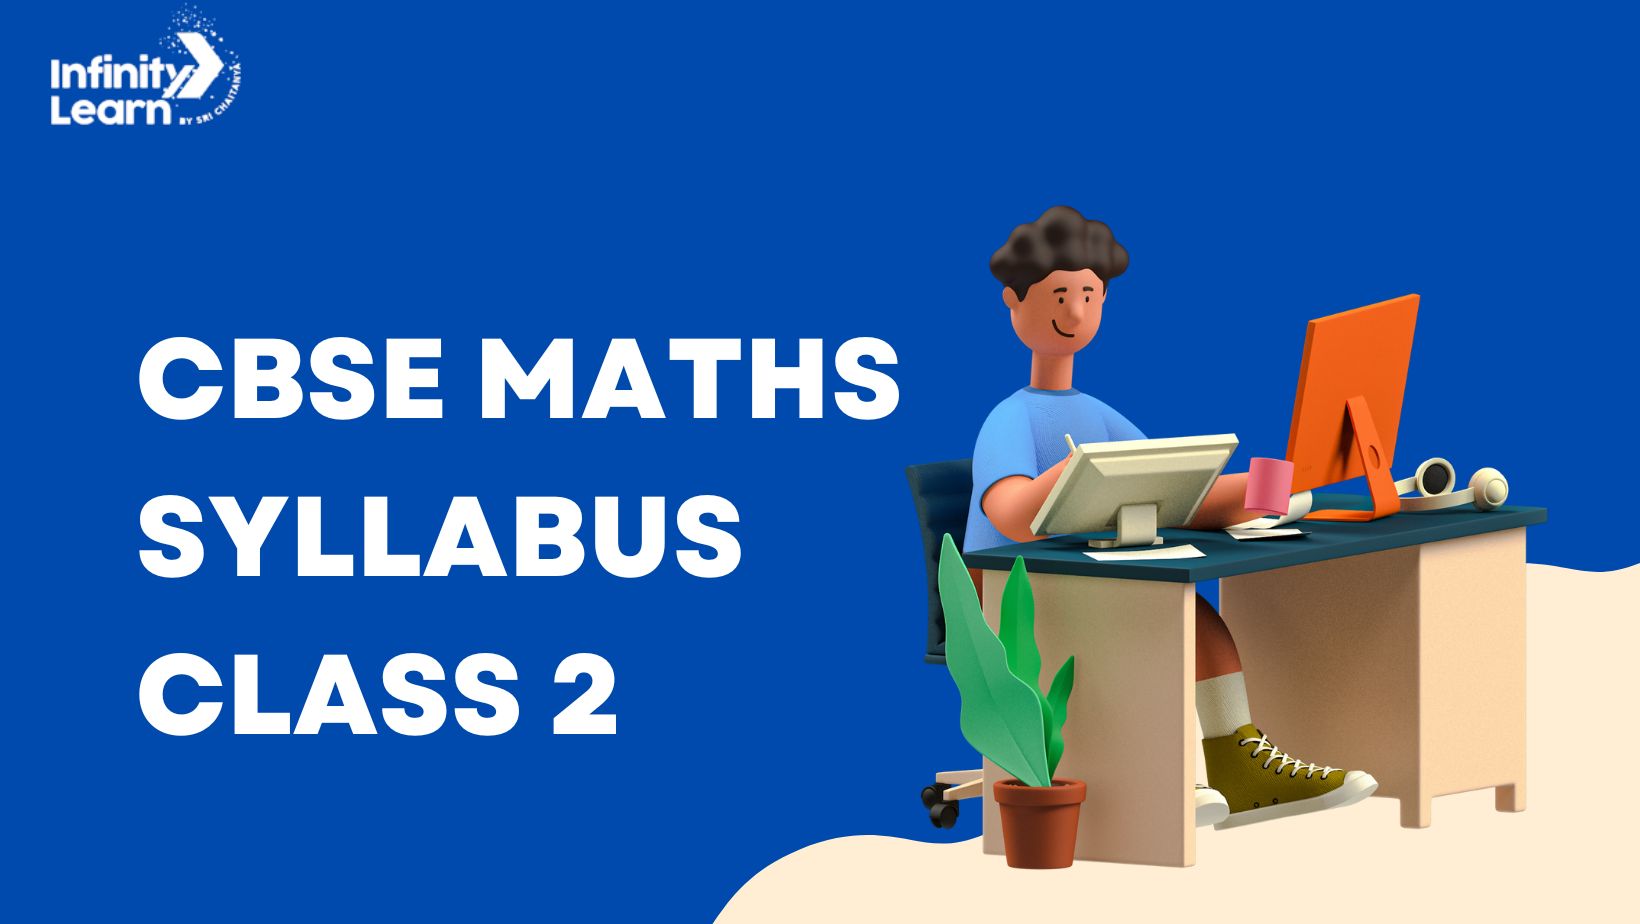 CBSE Maths Syllabus Class 2